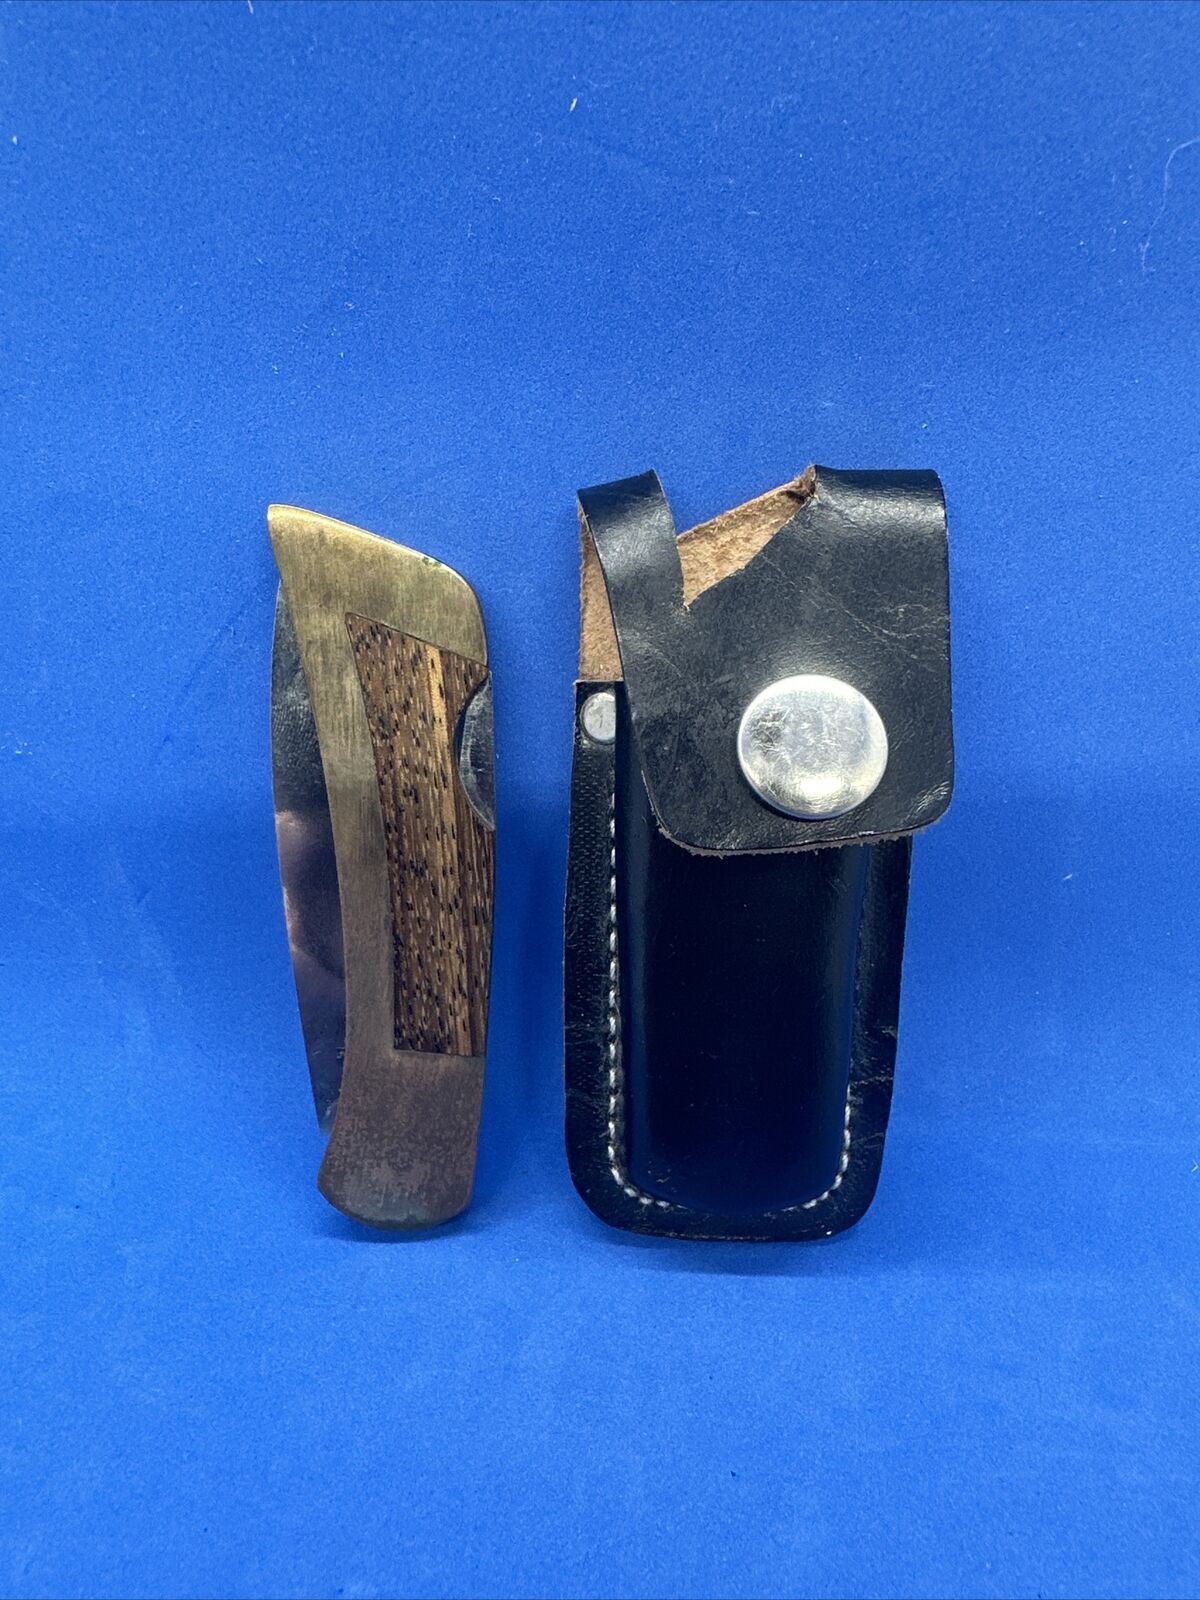 Vintage Gerber Pocket Knife Lockback Portland OR USA 97223 w/ Original Case